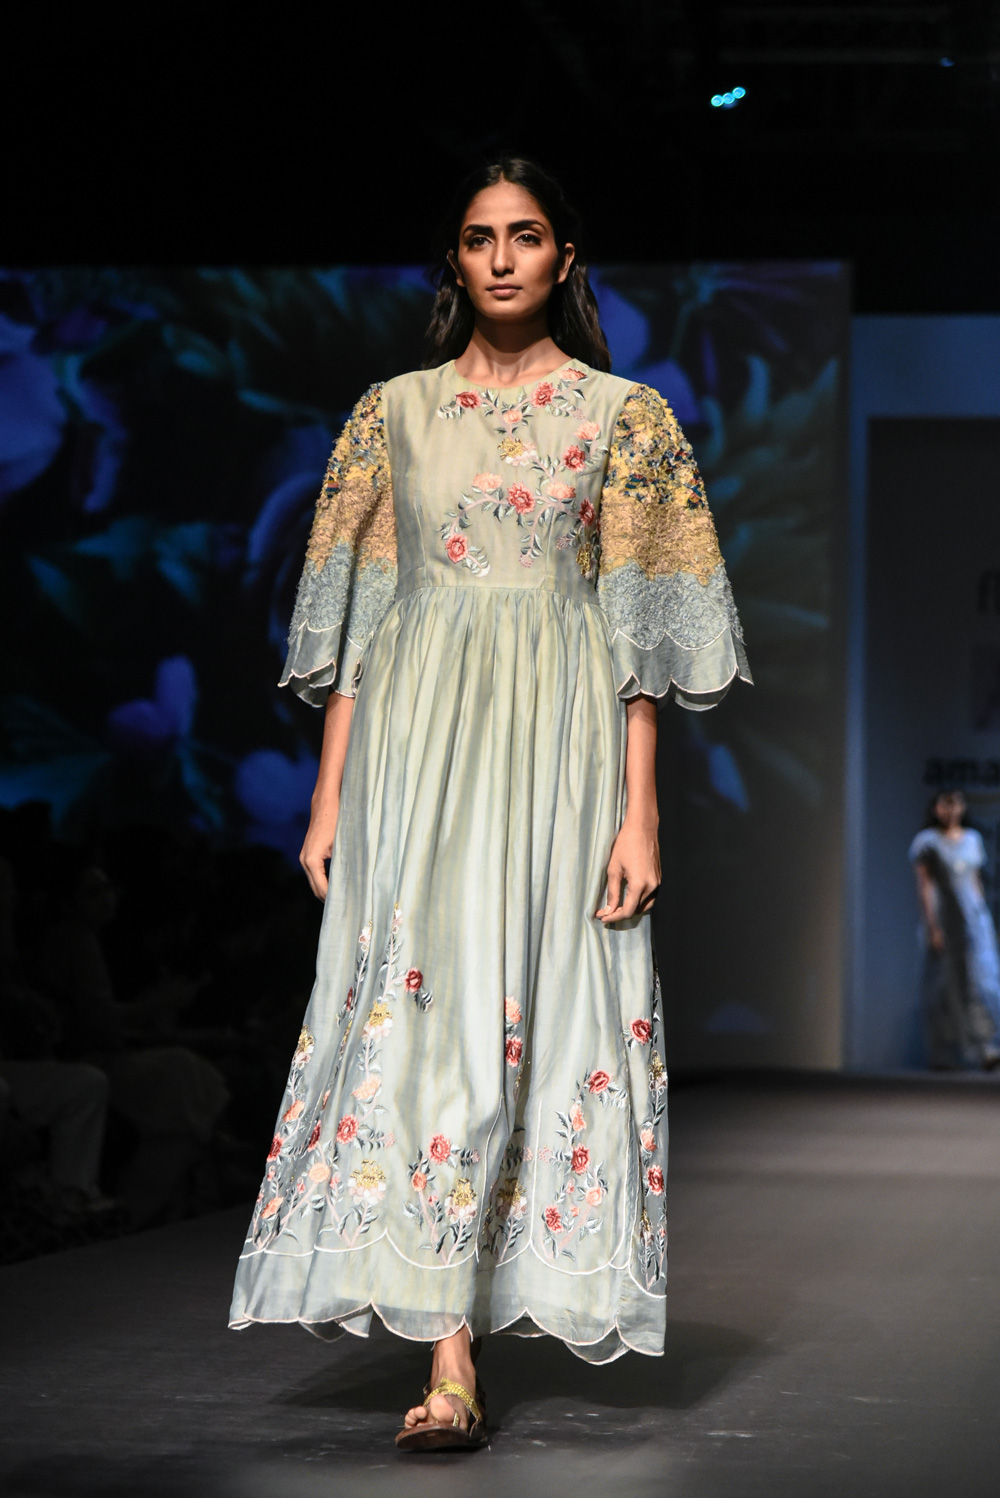 Pramaa by Pratimaa FDCI Amazon India Fashion Week Spring Summer 2018 Look 6